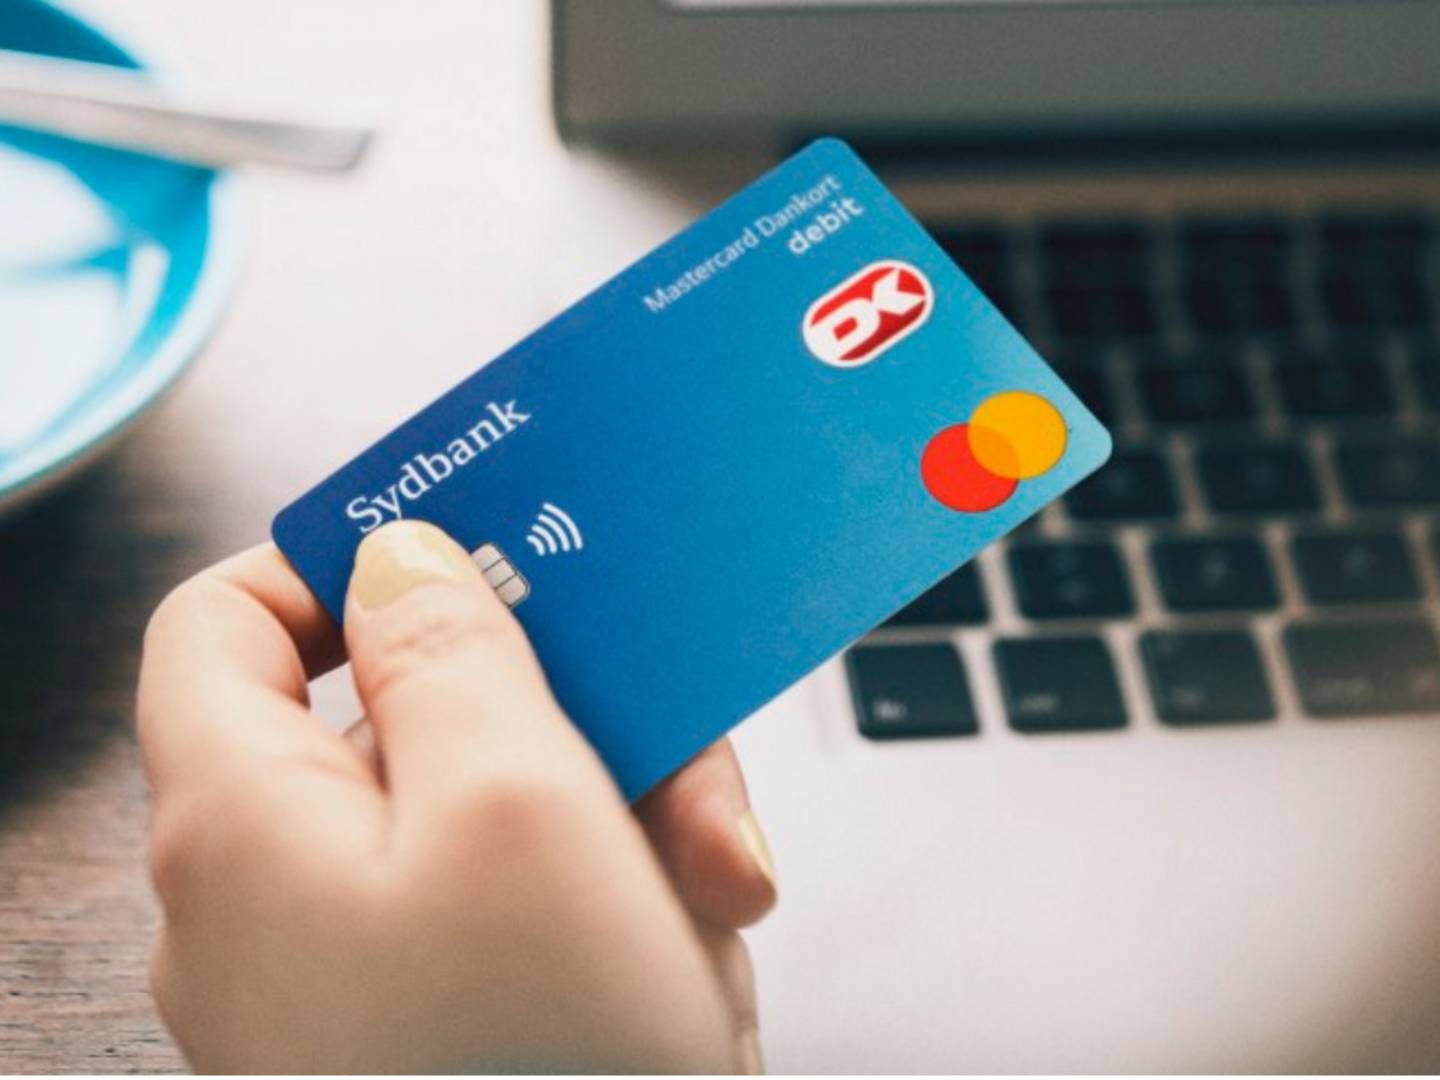 Før Sydbank og Mastercard indgik en aftale, var Visa det eneste selskab, der udgav dankort. | Foto: PR / Sydbank